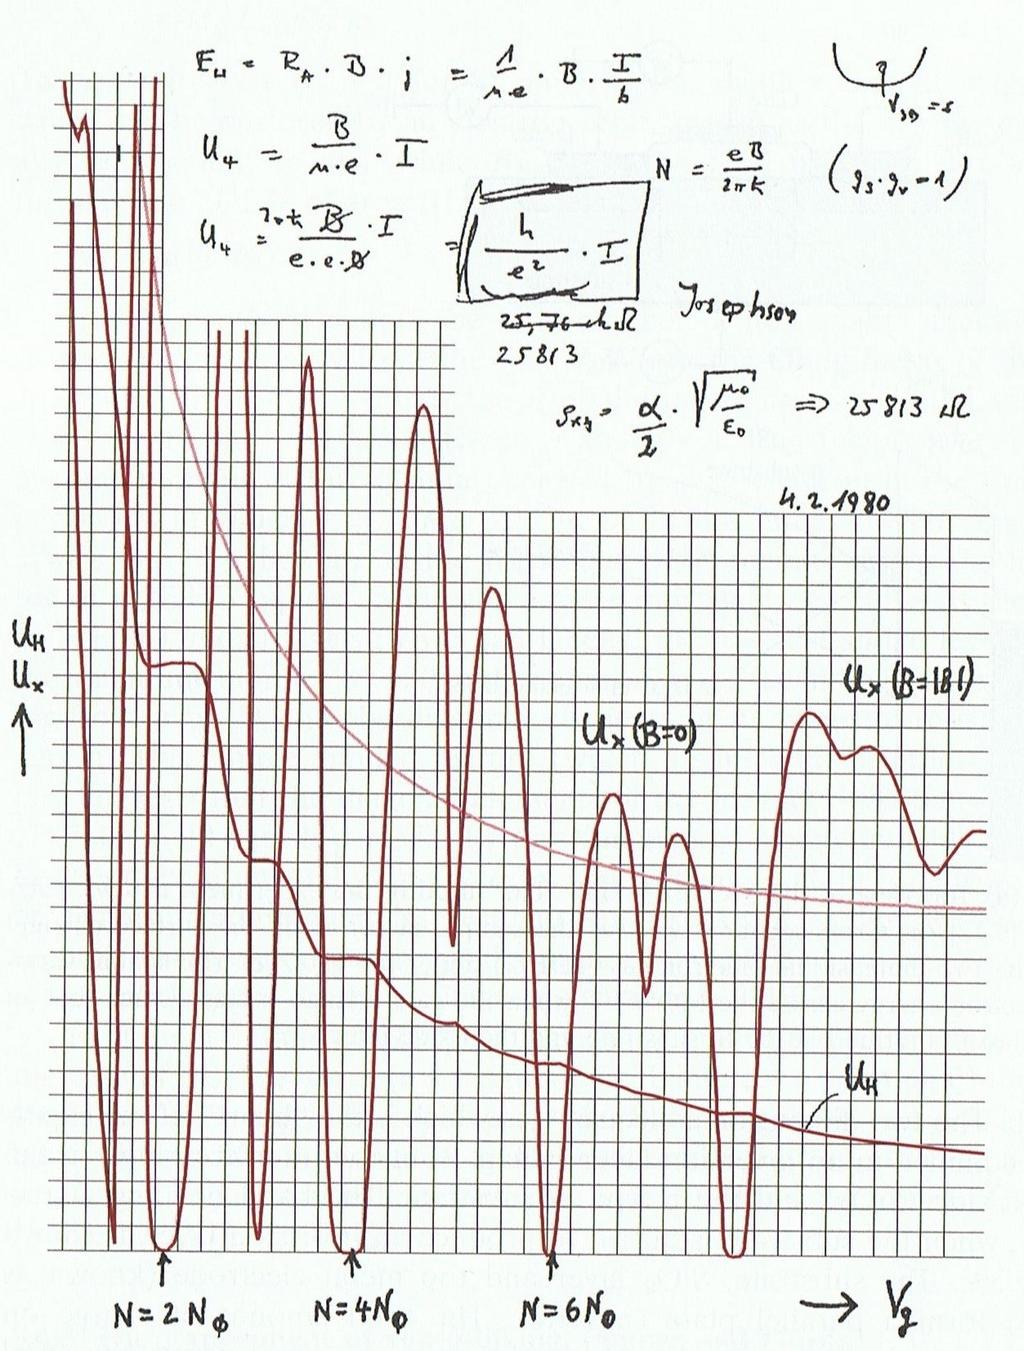 von Klitzing's experiment results P.Y. Yu,, M.